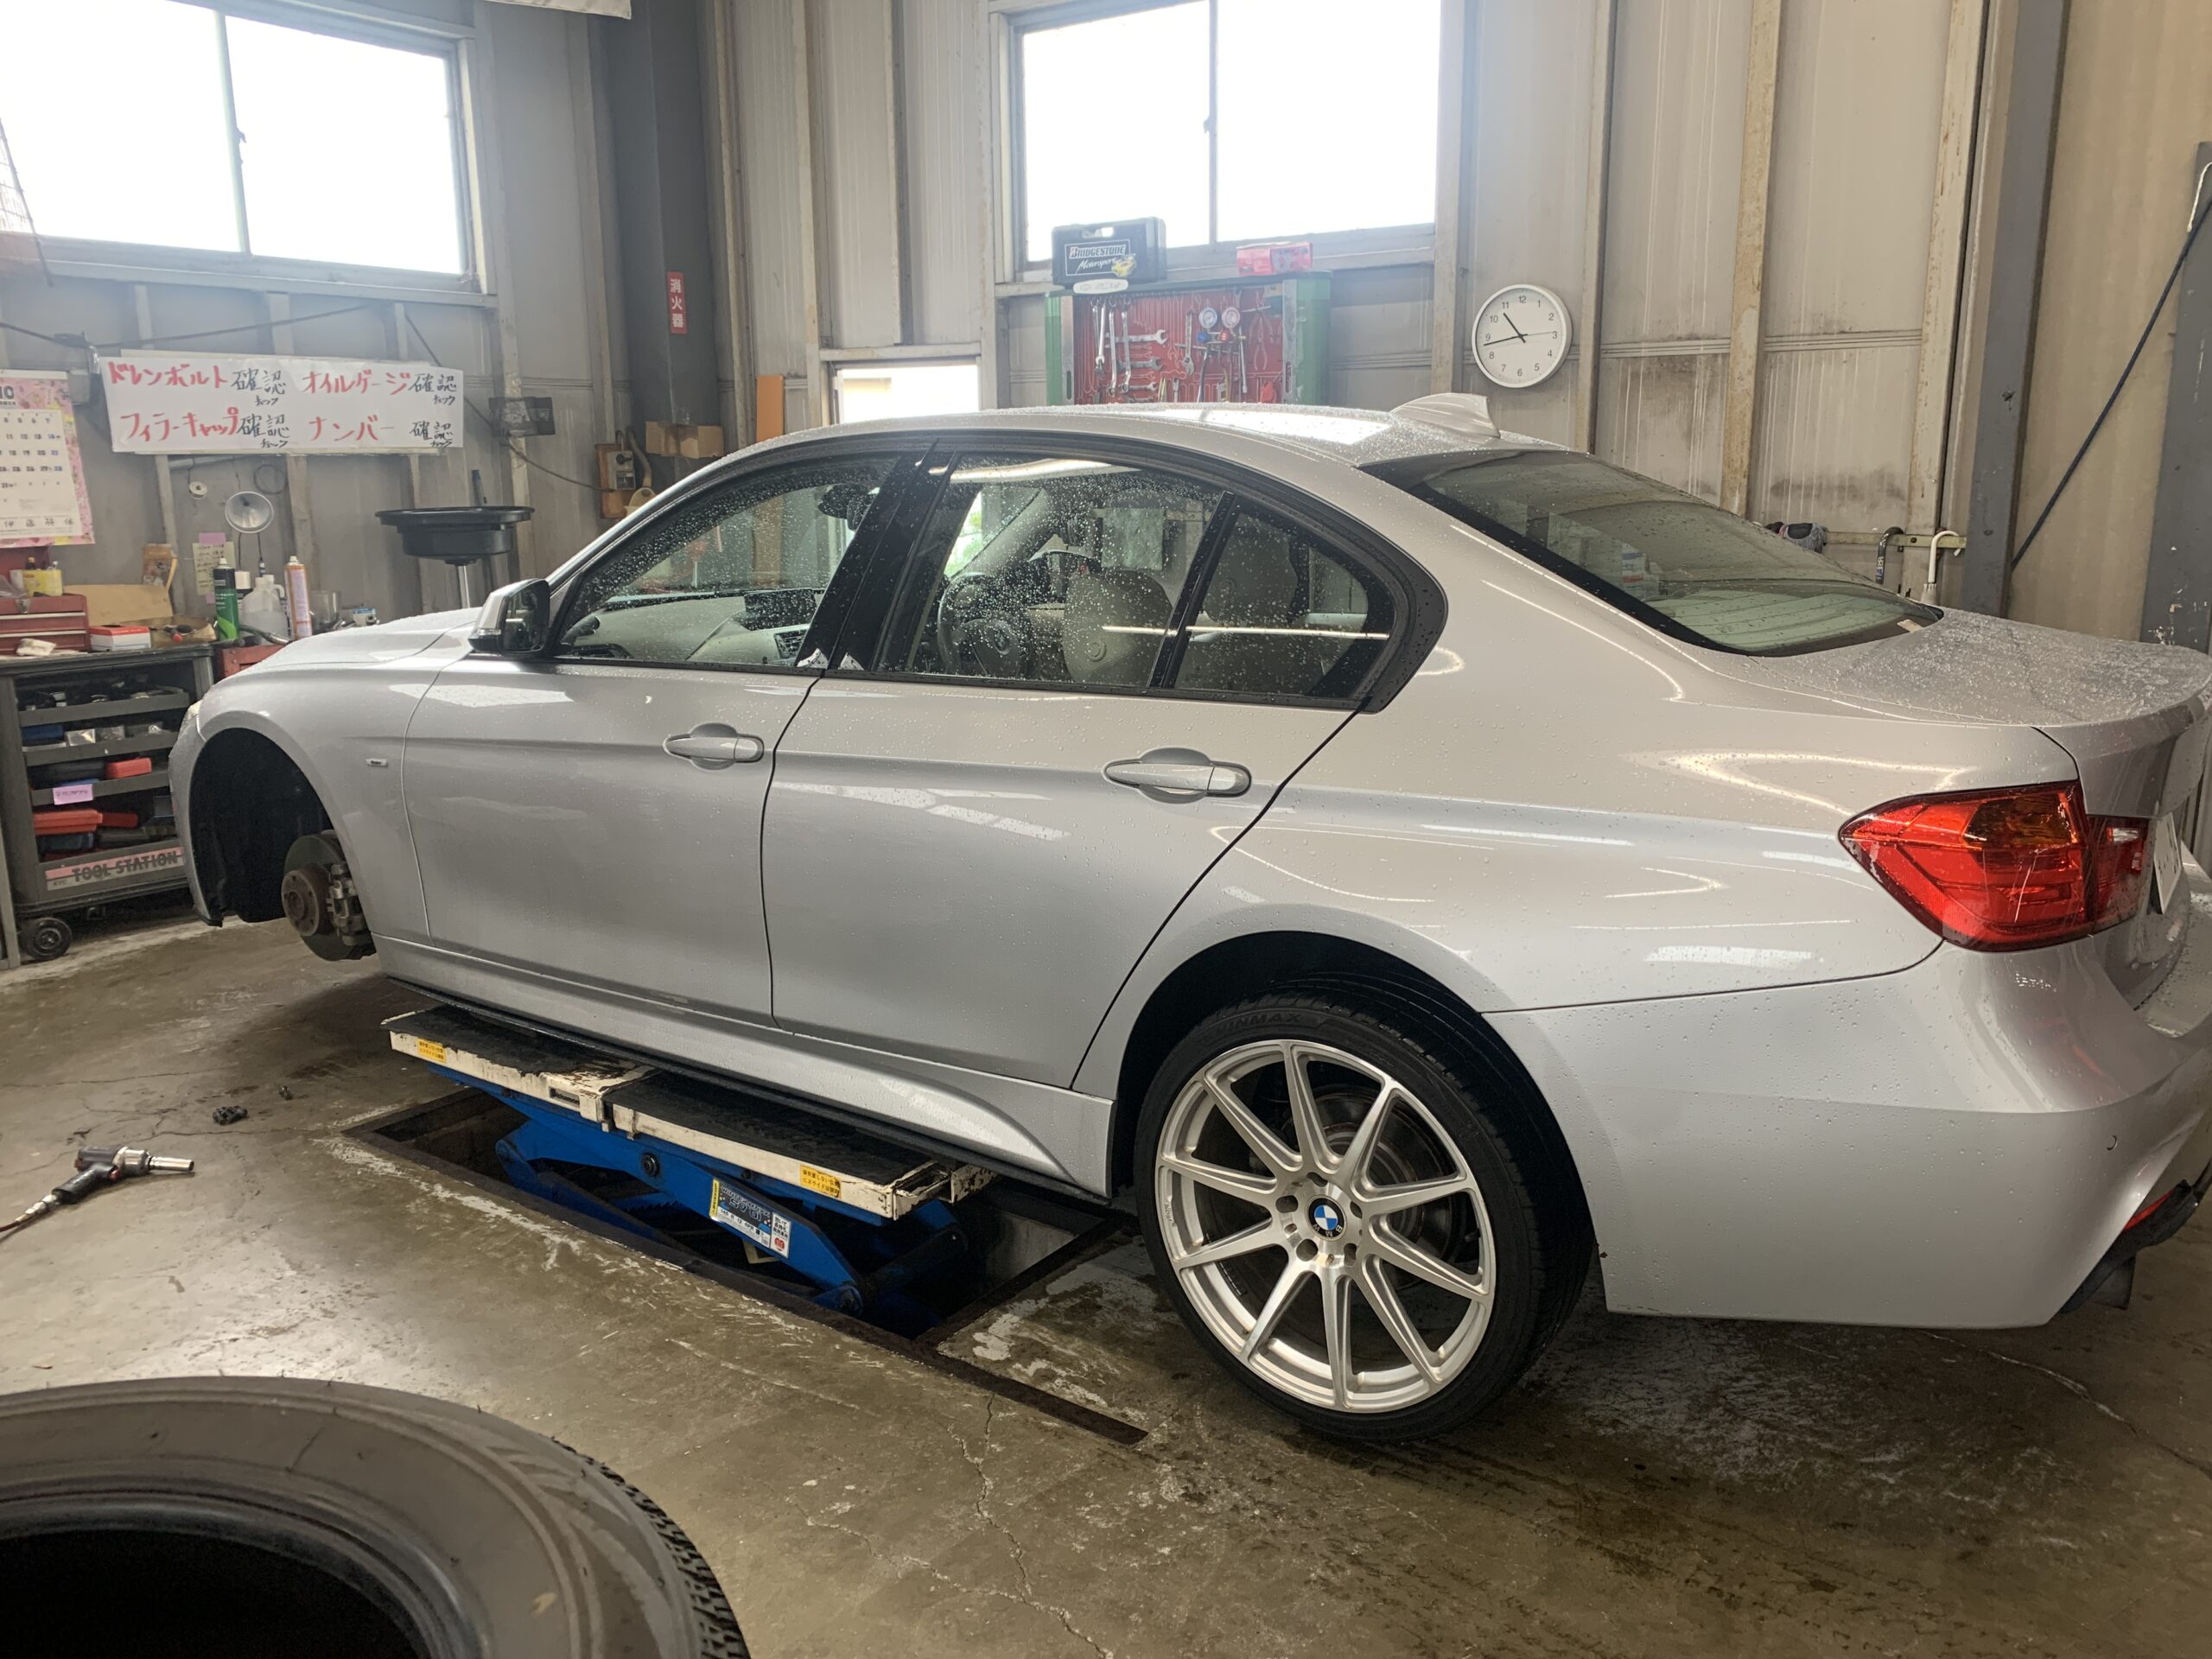 BMWタイヤ組換え作業